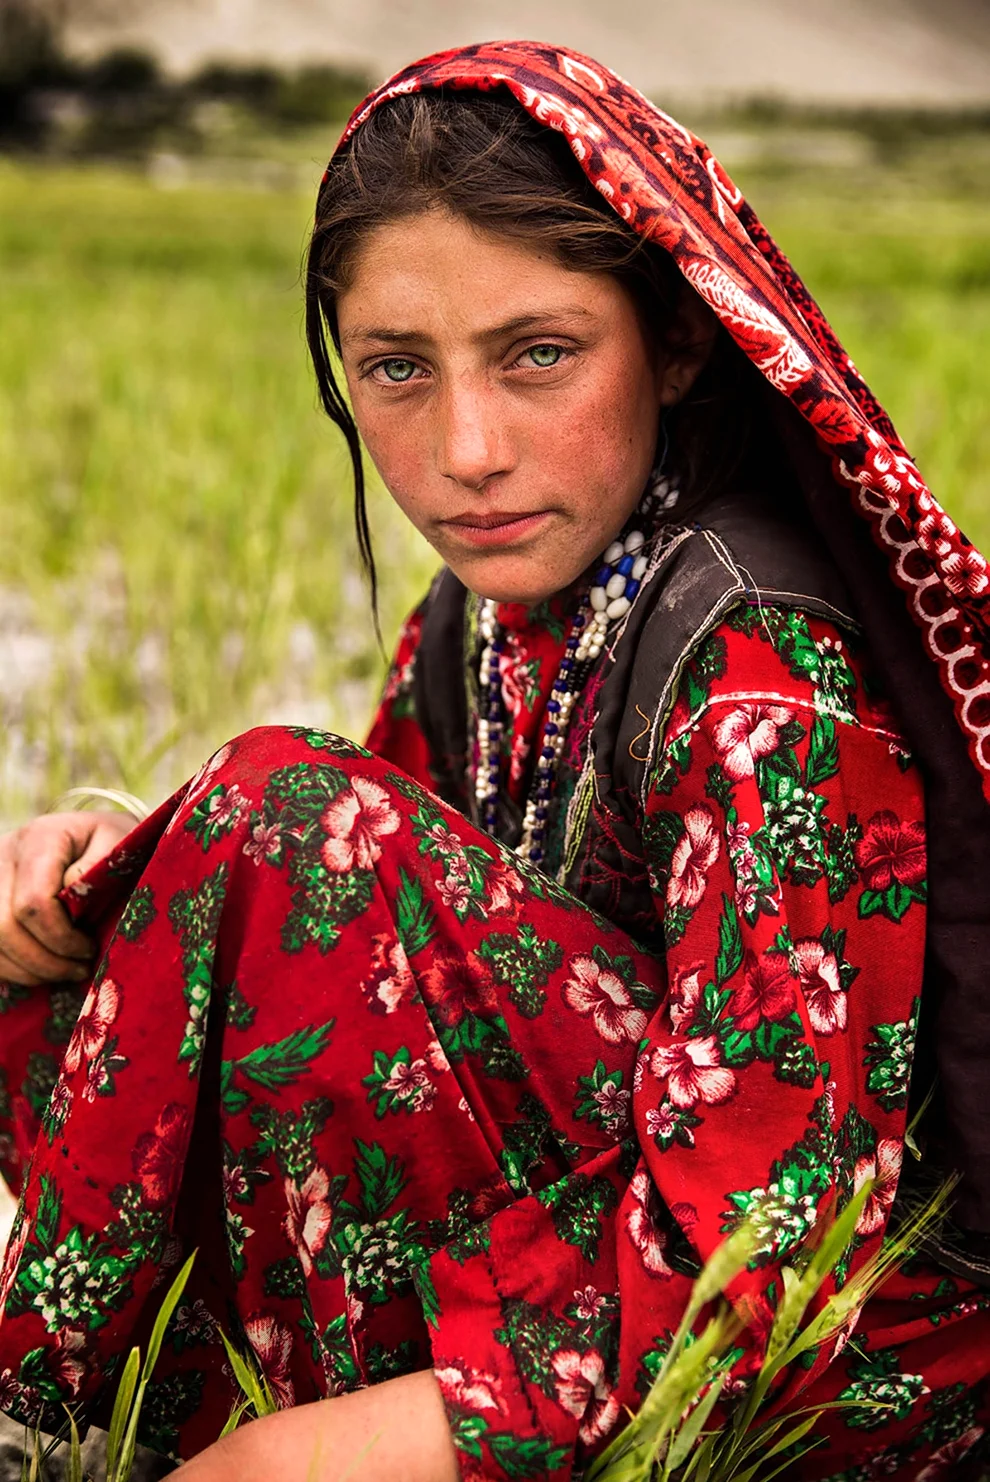 Пуштуны Афганистана. Красивая картинка